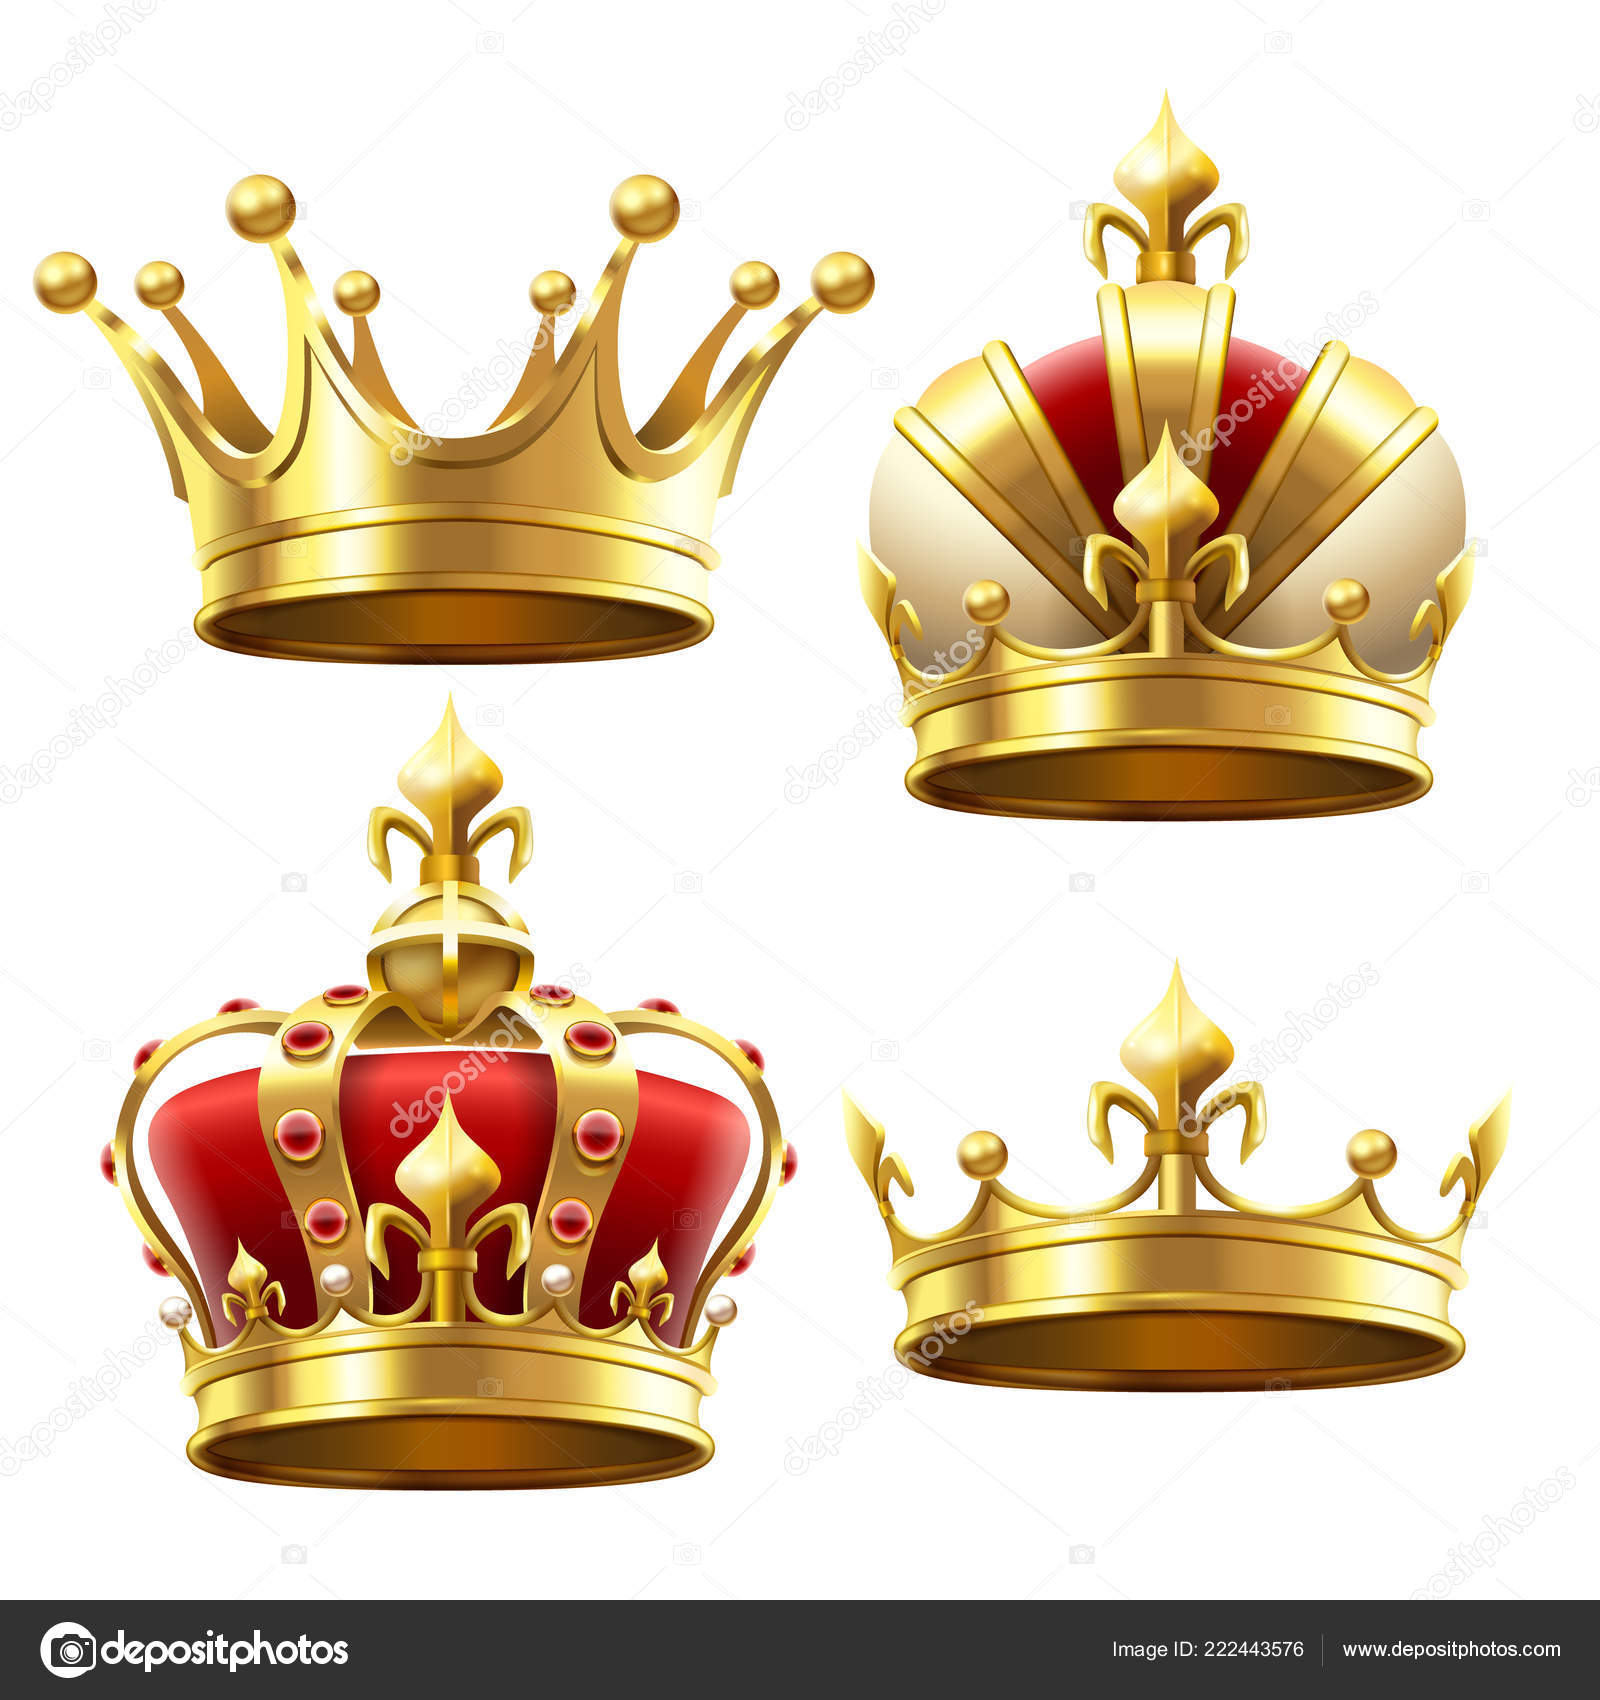 royal boy wallpaper,crown,brass,fashion accessory,metal